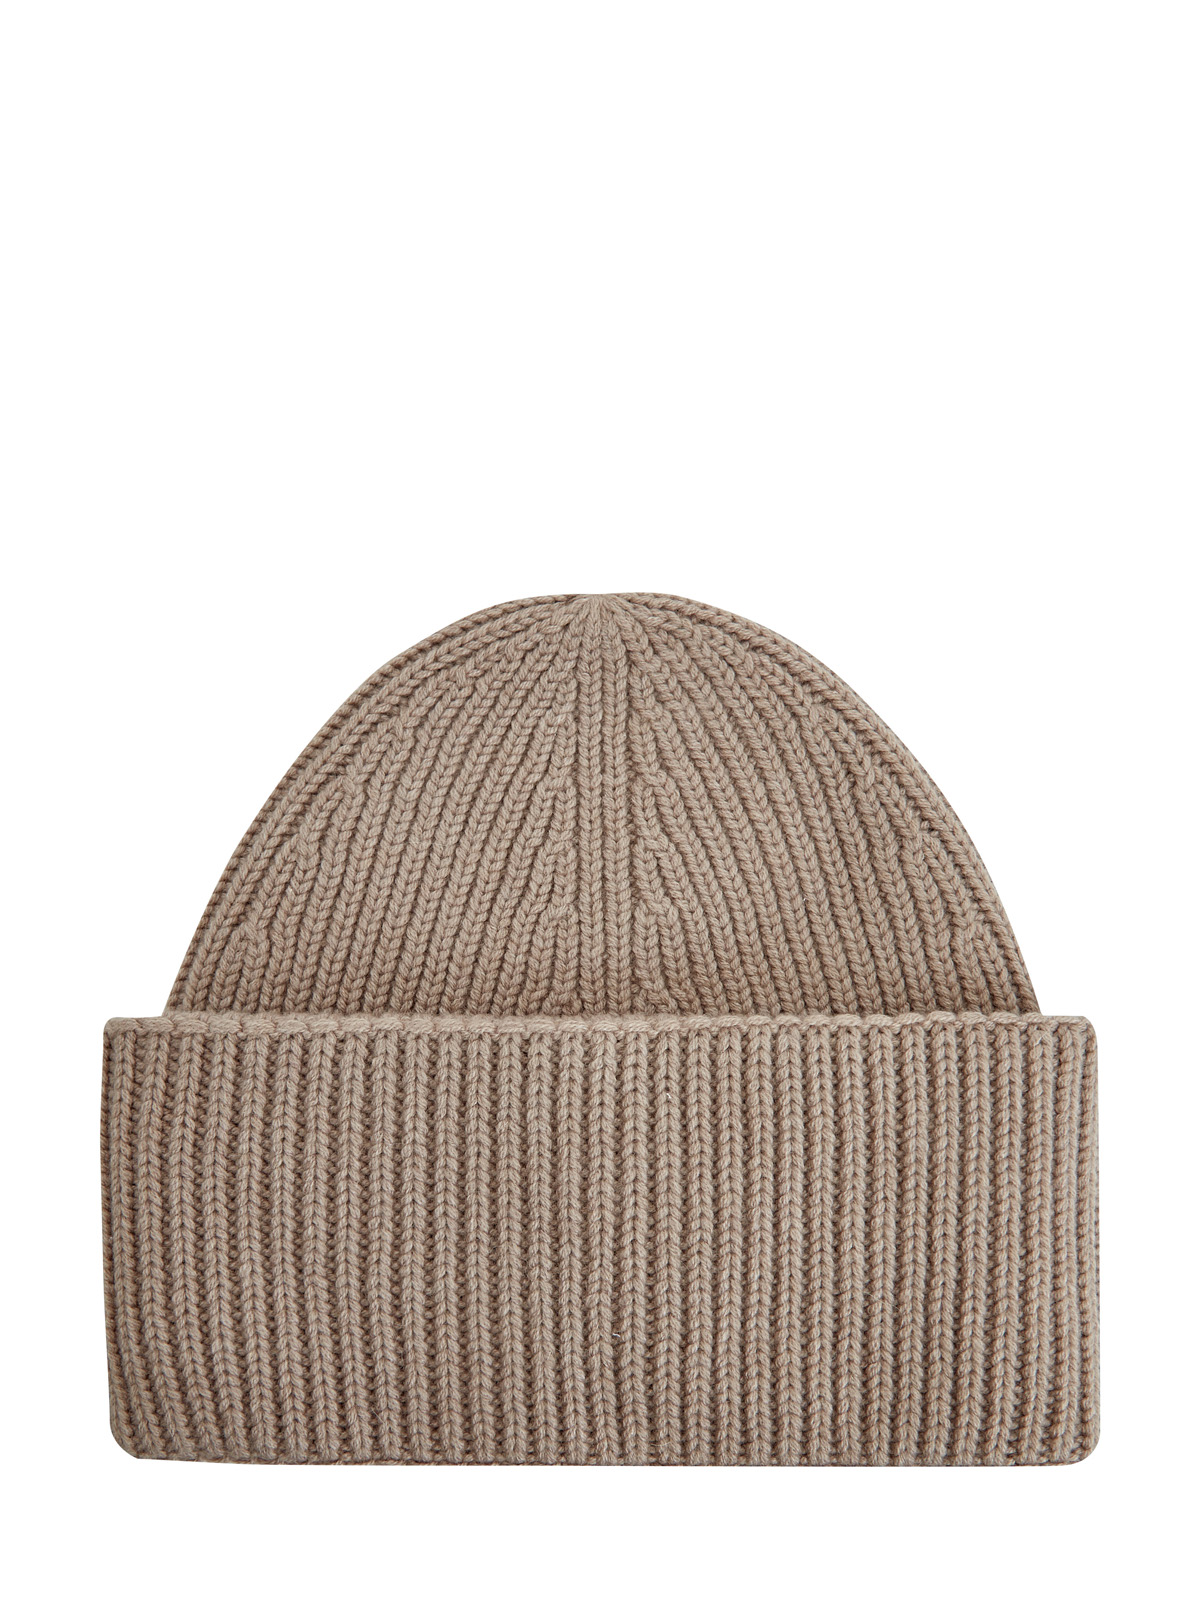 Теплая шапка из шерсти, шелка и кашемира FABIANA FILIPPI, цвет коричневый, размер 37;37.5;38;38.5;40